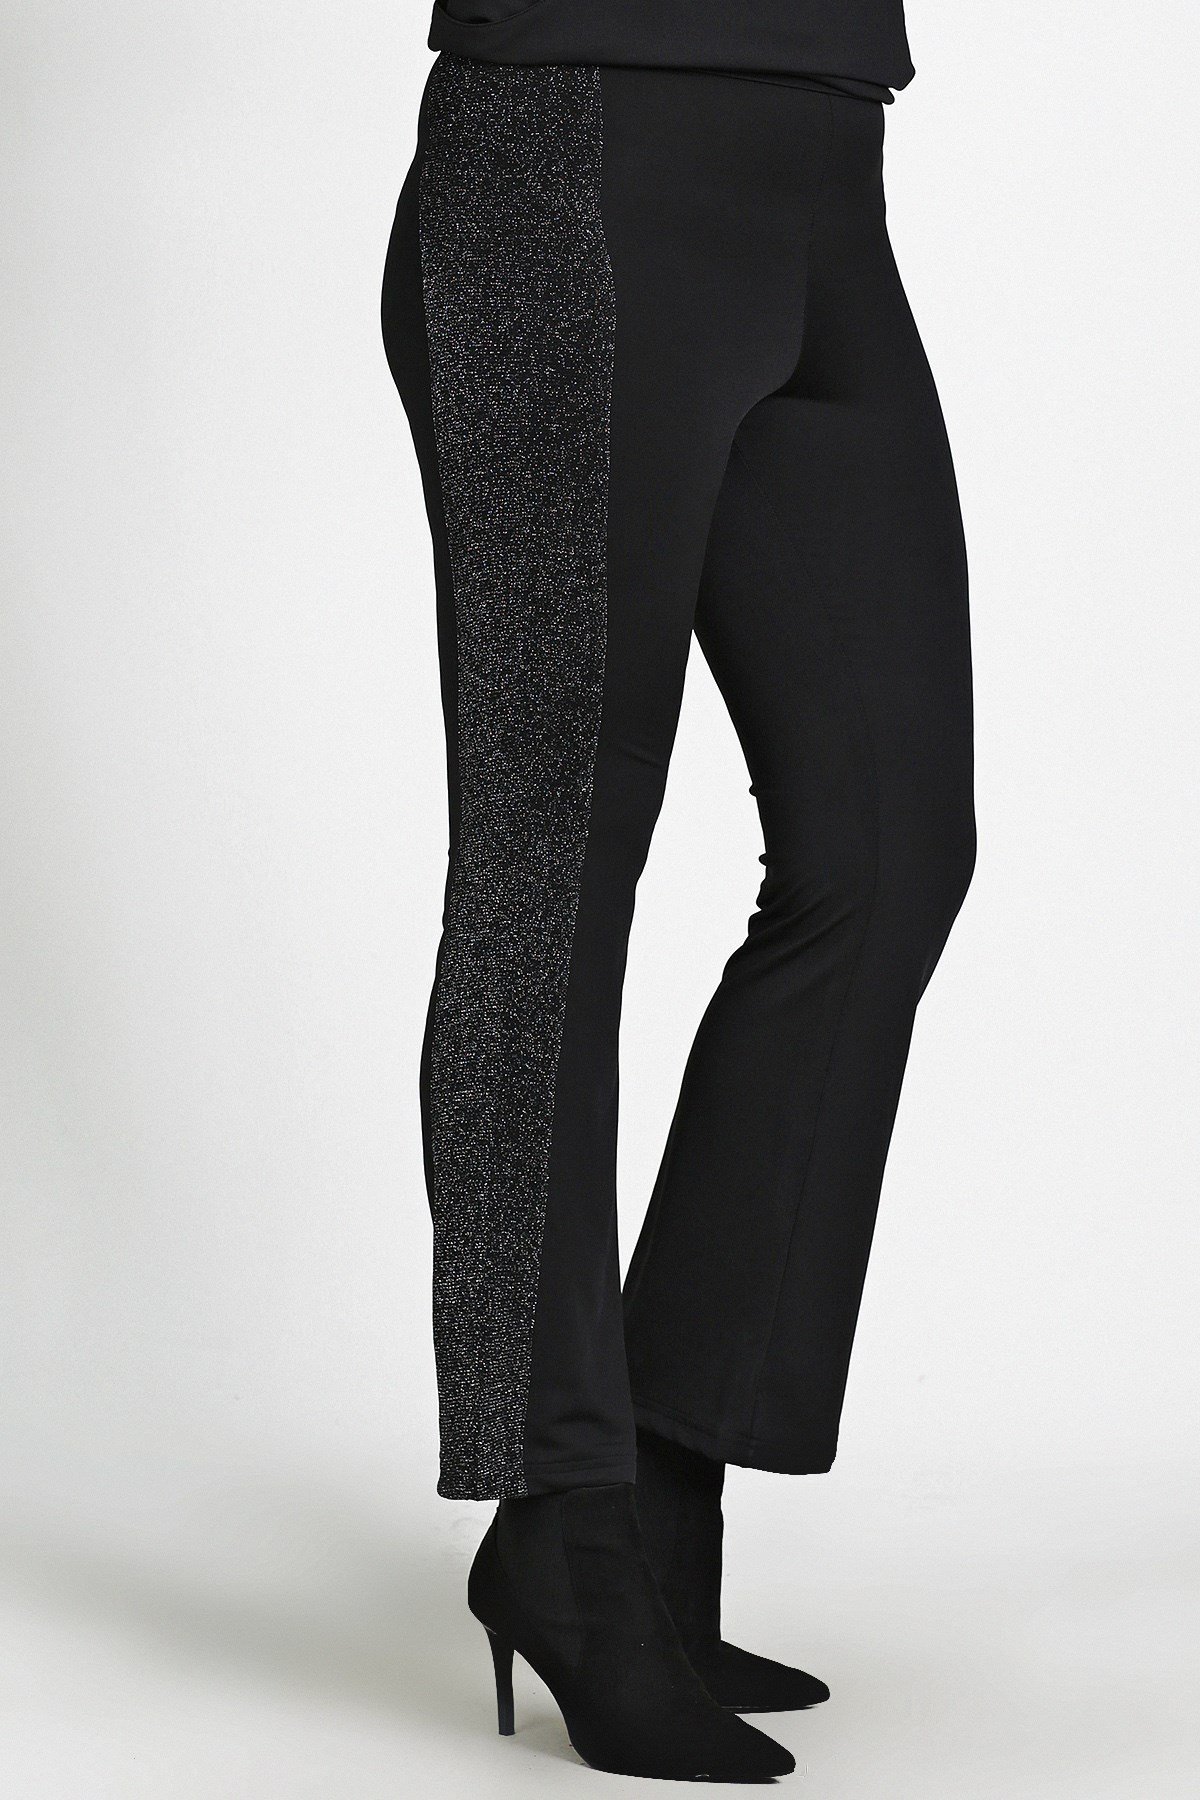 Moda Cazibe Büyük Beden İspanyol Paça Yanı Simli Tayt Pantolon Siyah